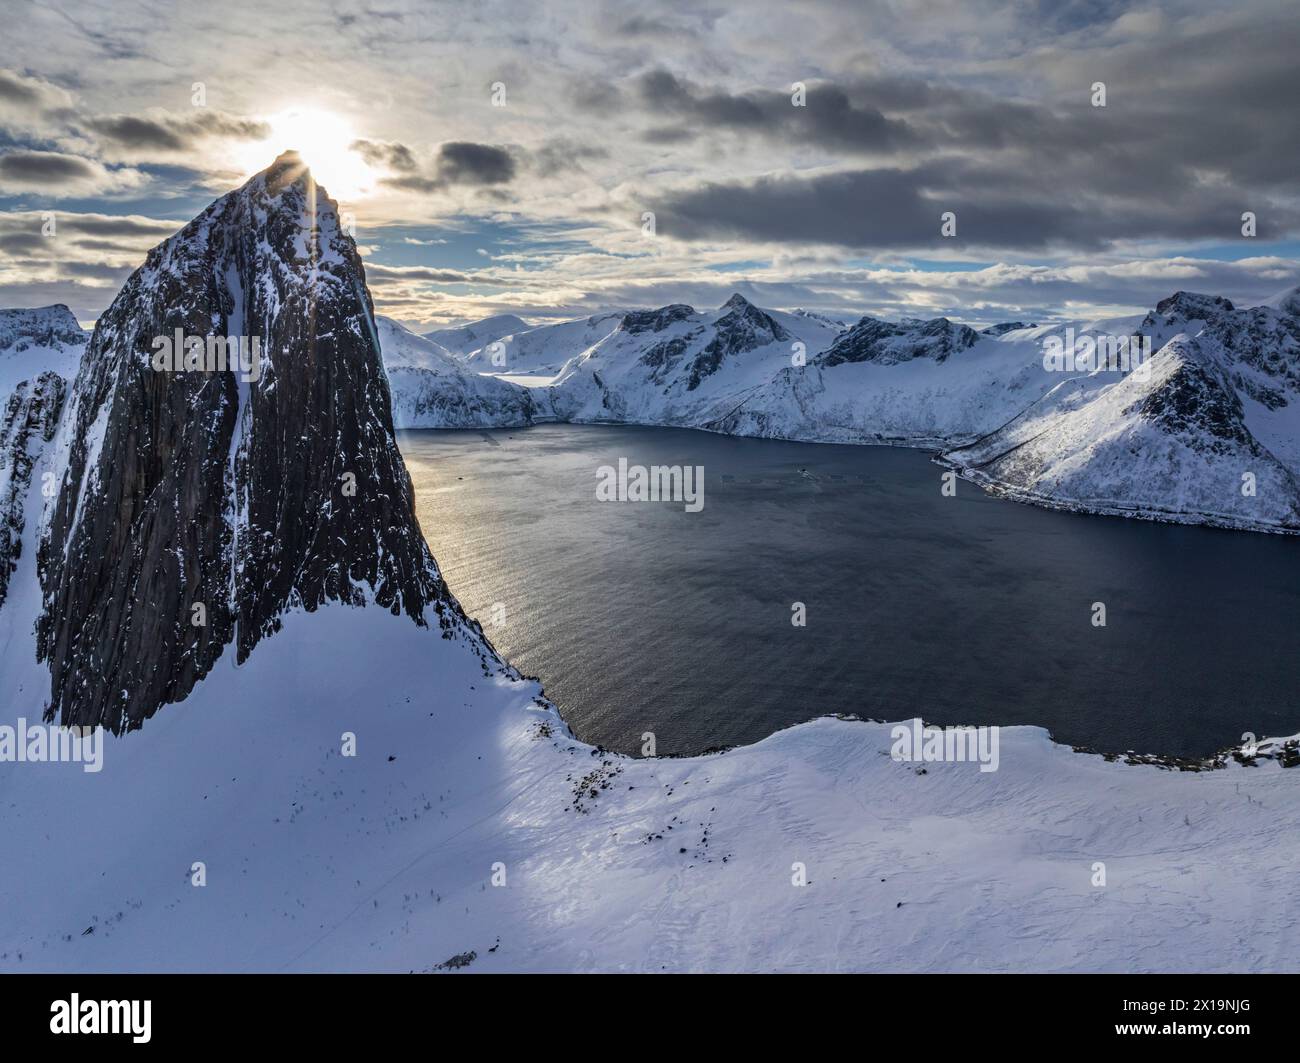 Montagnes escarpées à la côte en hiver, ensoleillé, Mont Segla, Senja, Troms, Norvège, Europe Banque D'Images